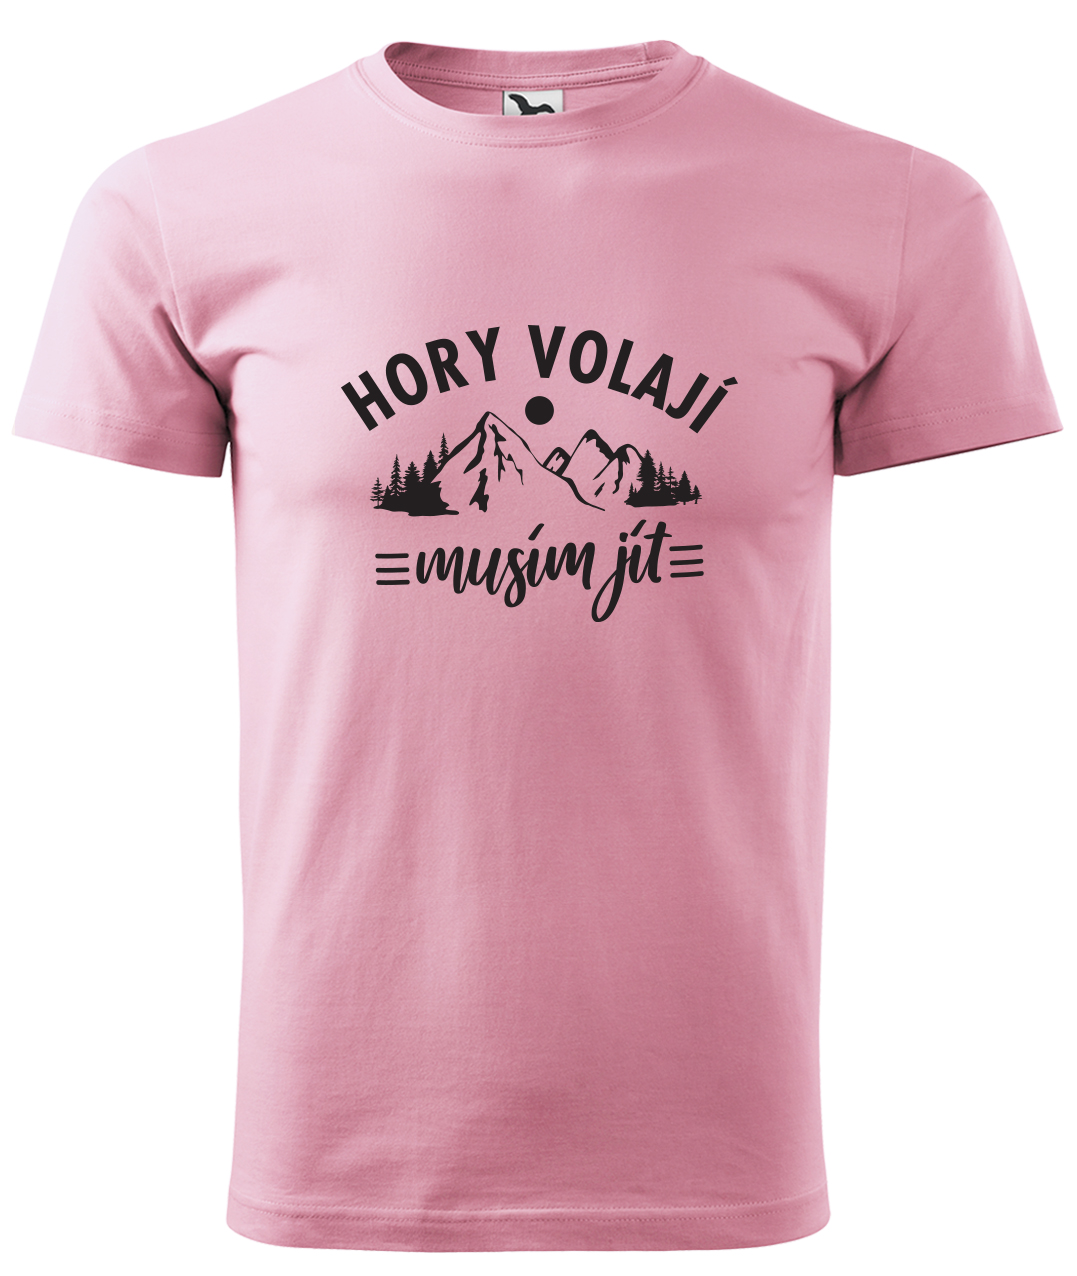 Dětské tričko na hory - Hory volají, musím jít Velikost: 10 let / 146 cm, Barva: Růžová (30), Délka rukávu: Krátký rukáv